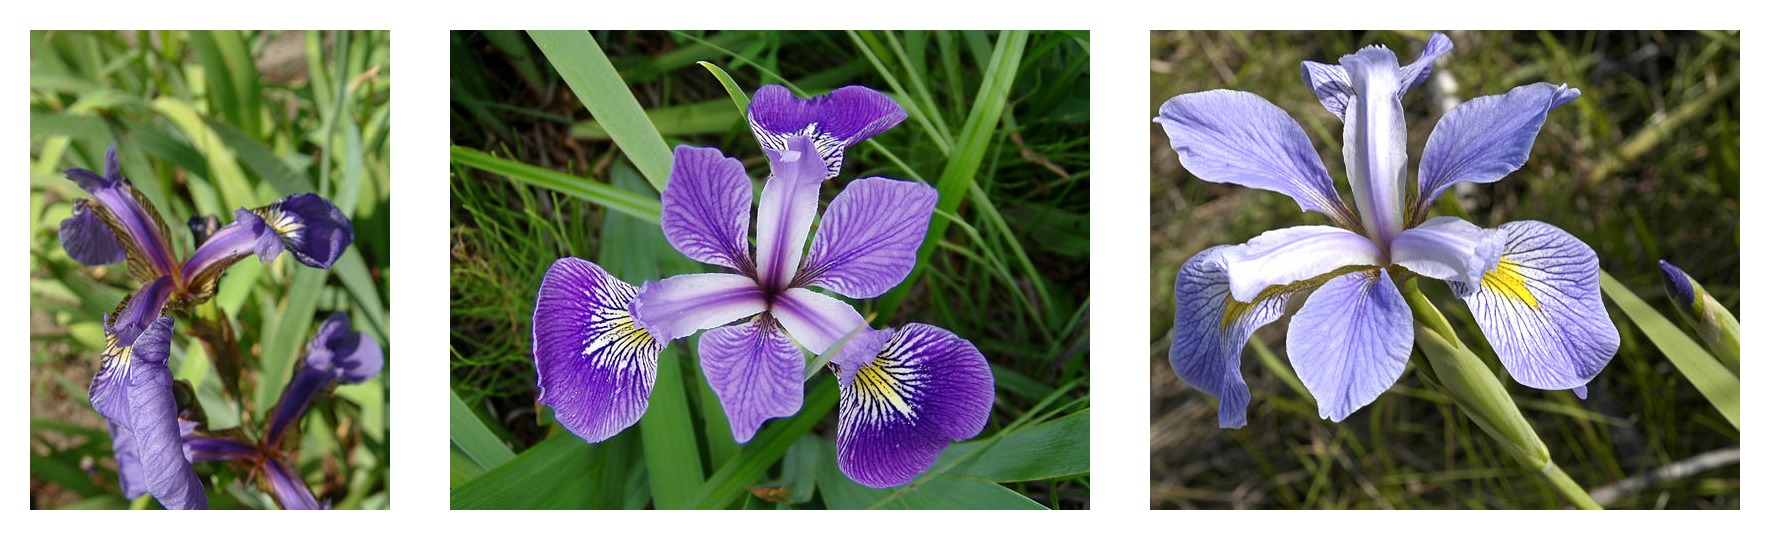 Porównanie geometrii płatków dla trzech gatunków tęczówki: Iris setosa, Iris virginica i Iris versicolor